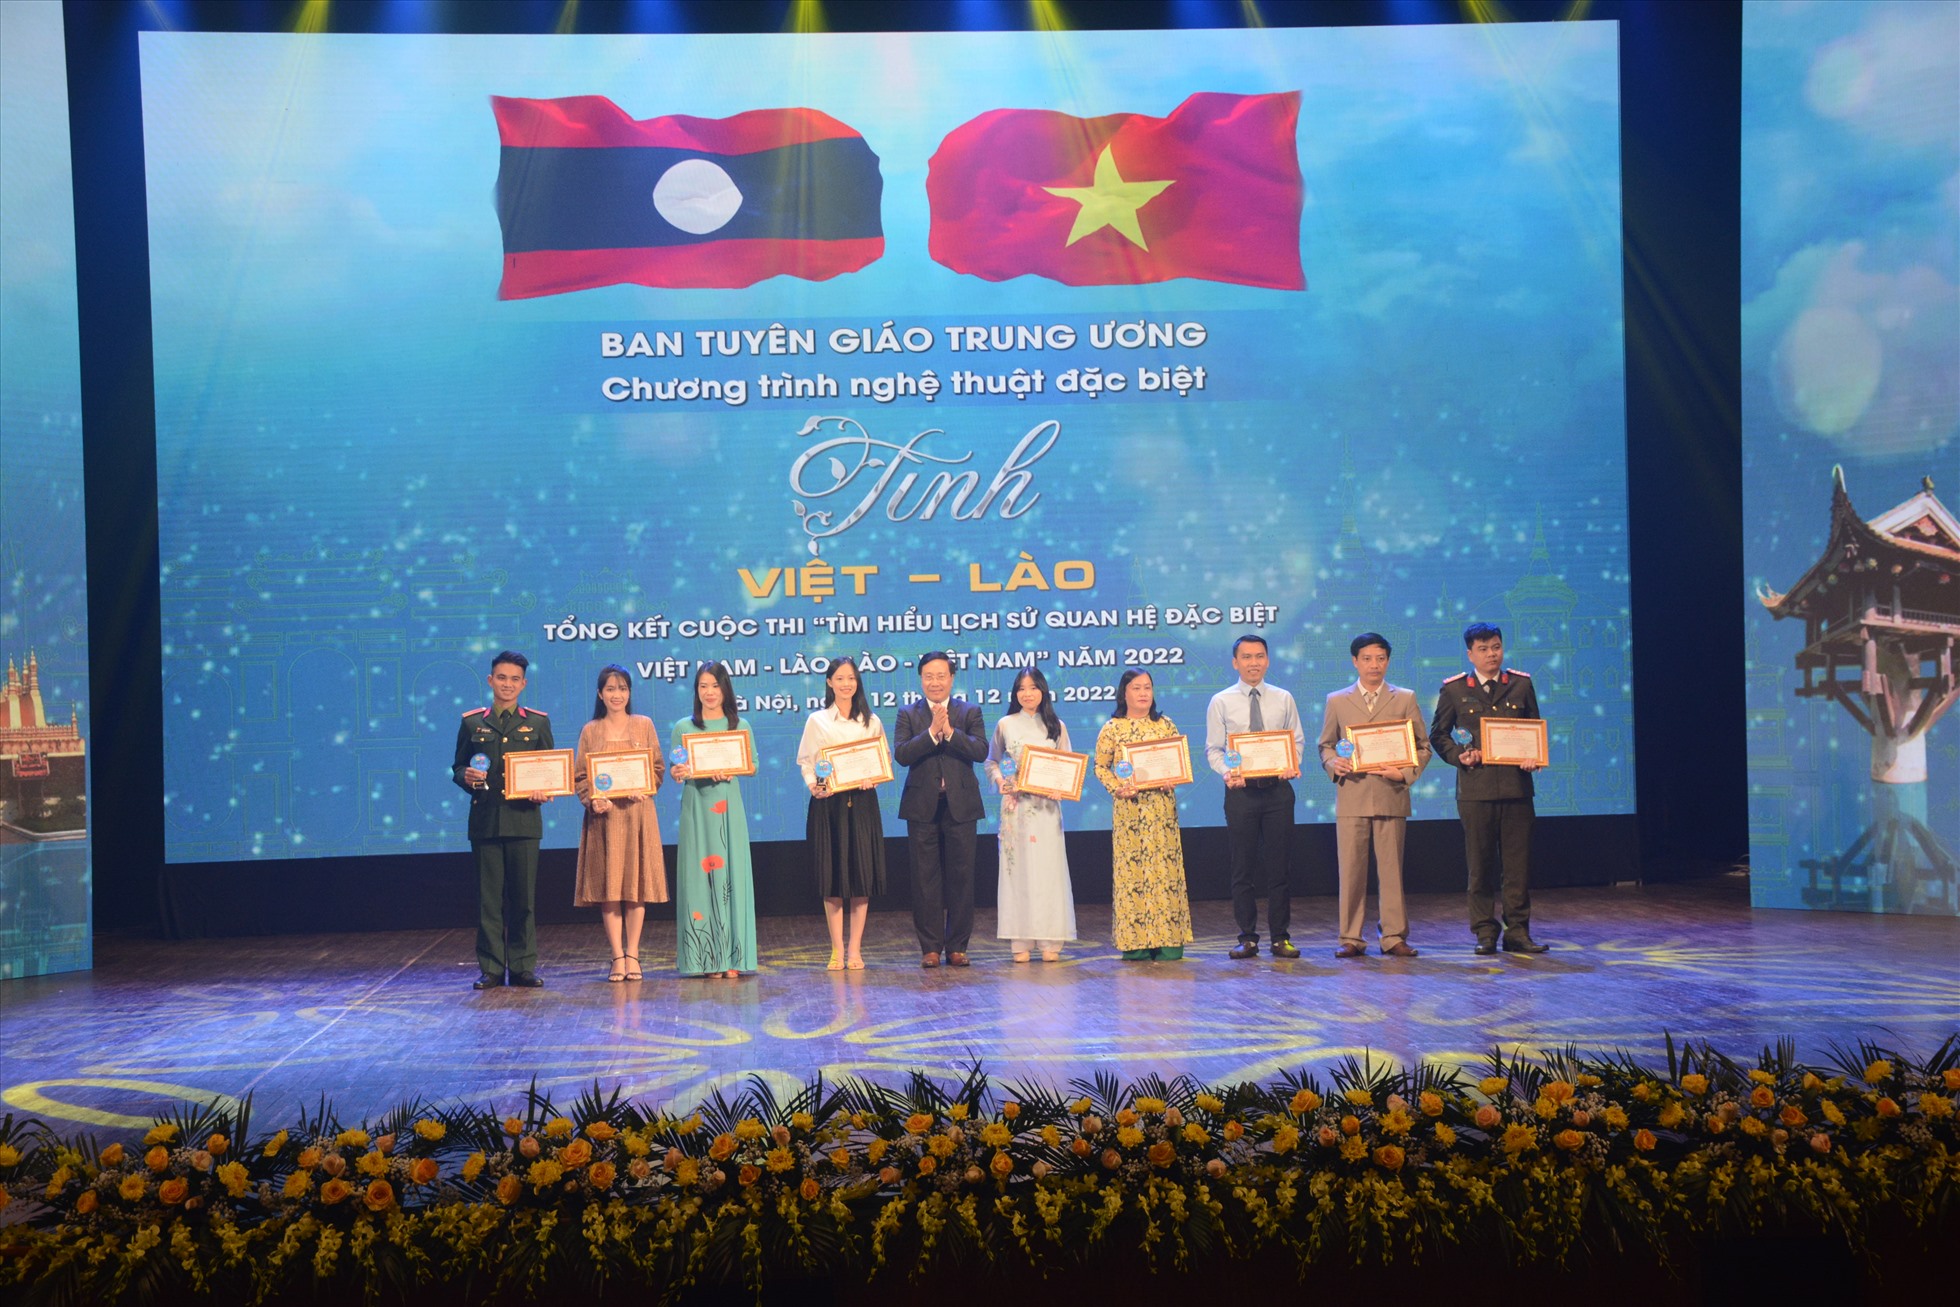 Đồng chí Phạm Bình Minh trao bằng khen và kỷ niệm chương tặng các thí sinh đạt giải Nhất của Cuộc thi.